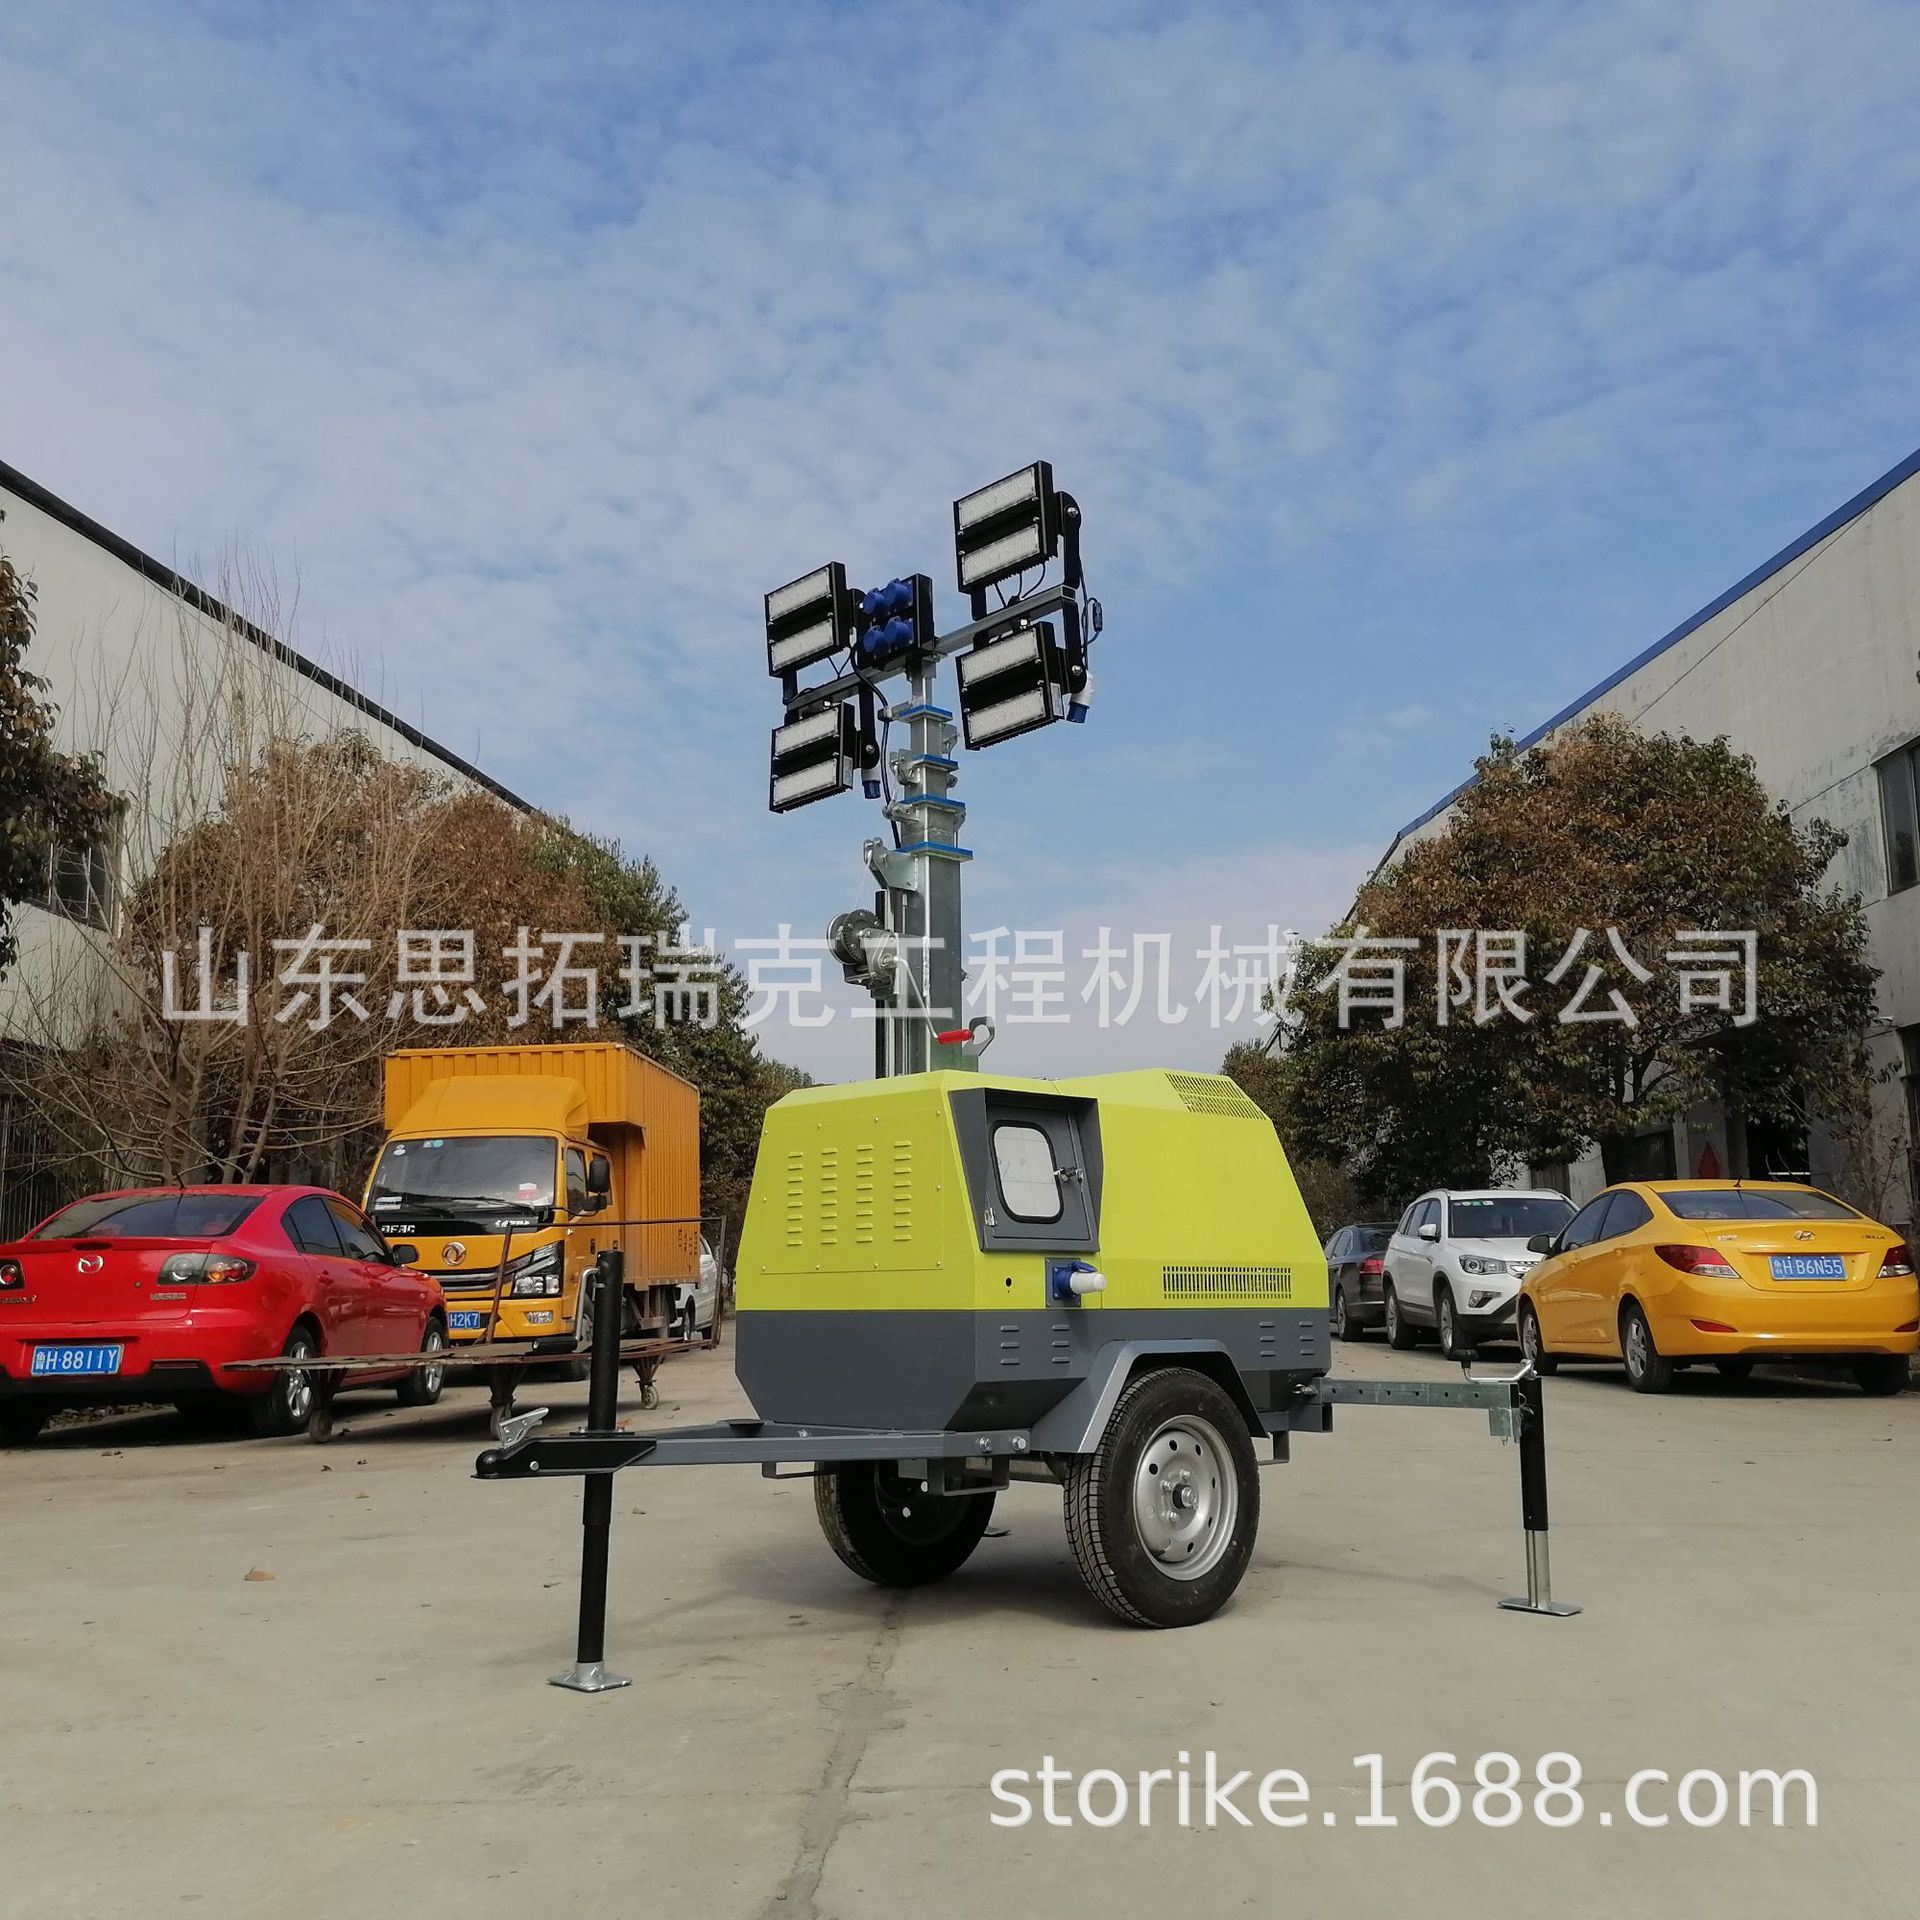 内蒙古二连浩特移动照明车建设用7米应急施工拖车式照明车